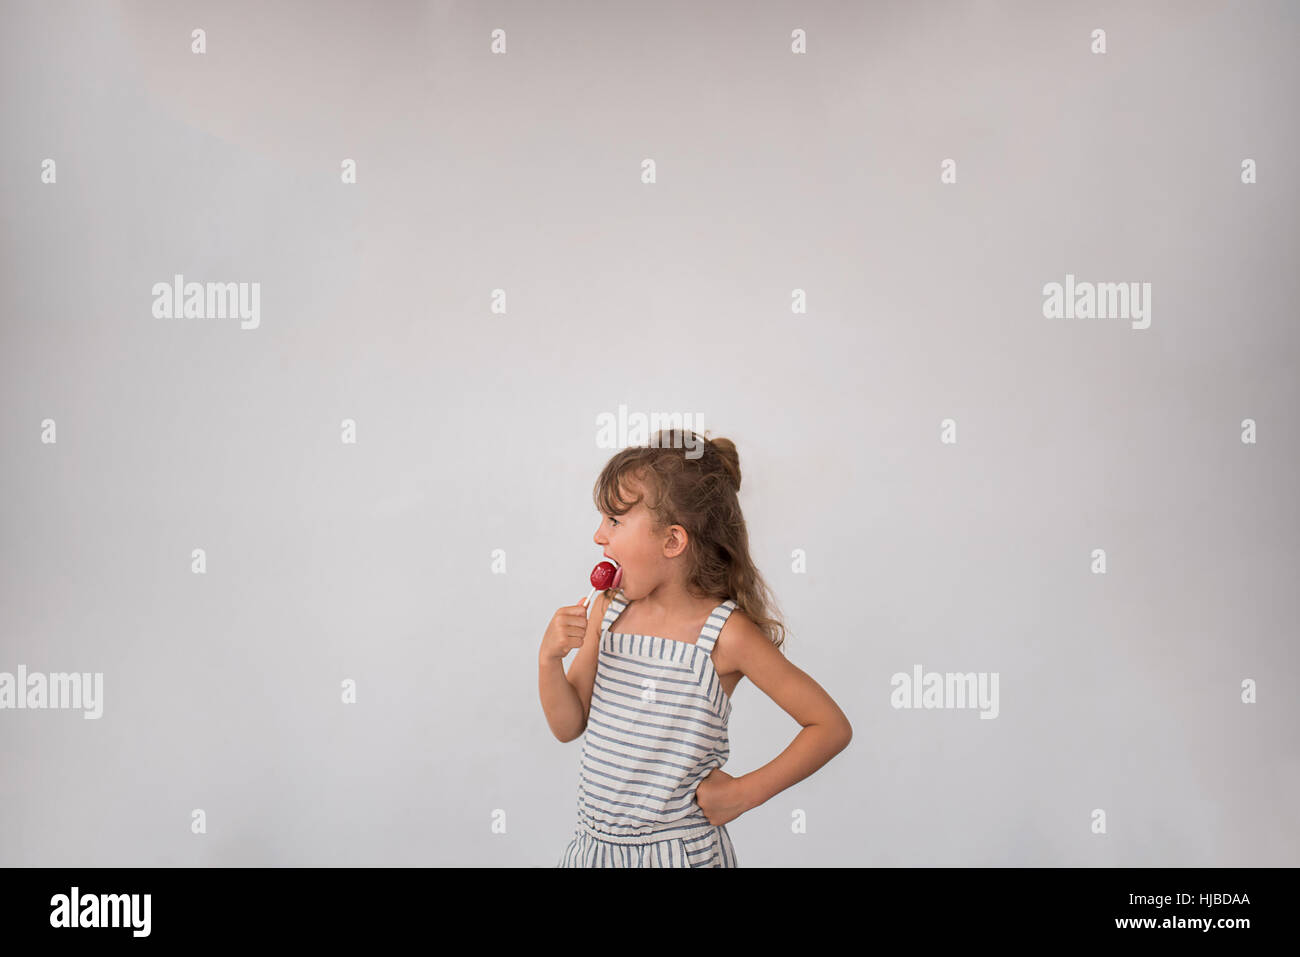 Little girl licking lollipop against white background Stock Photo